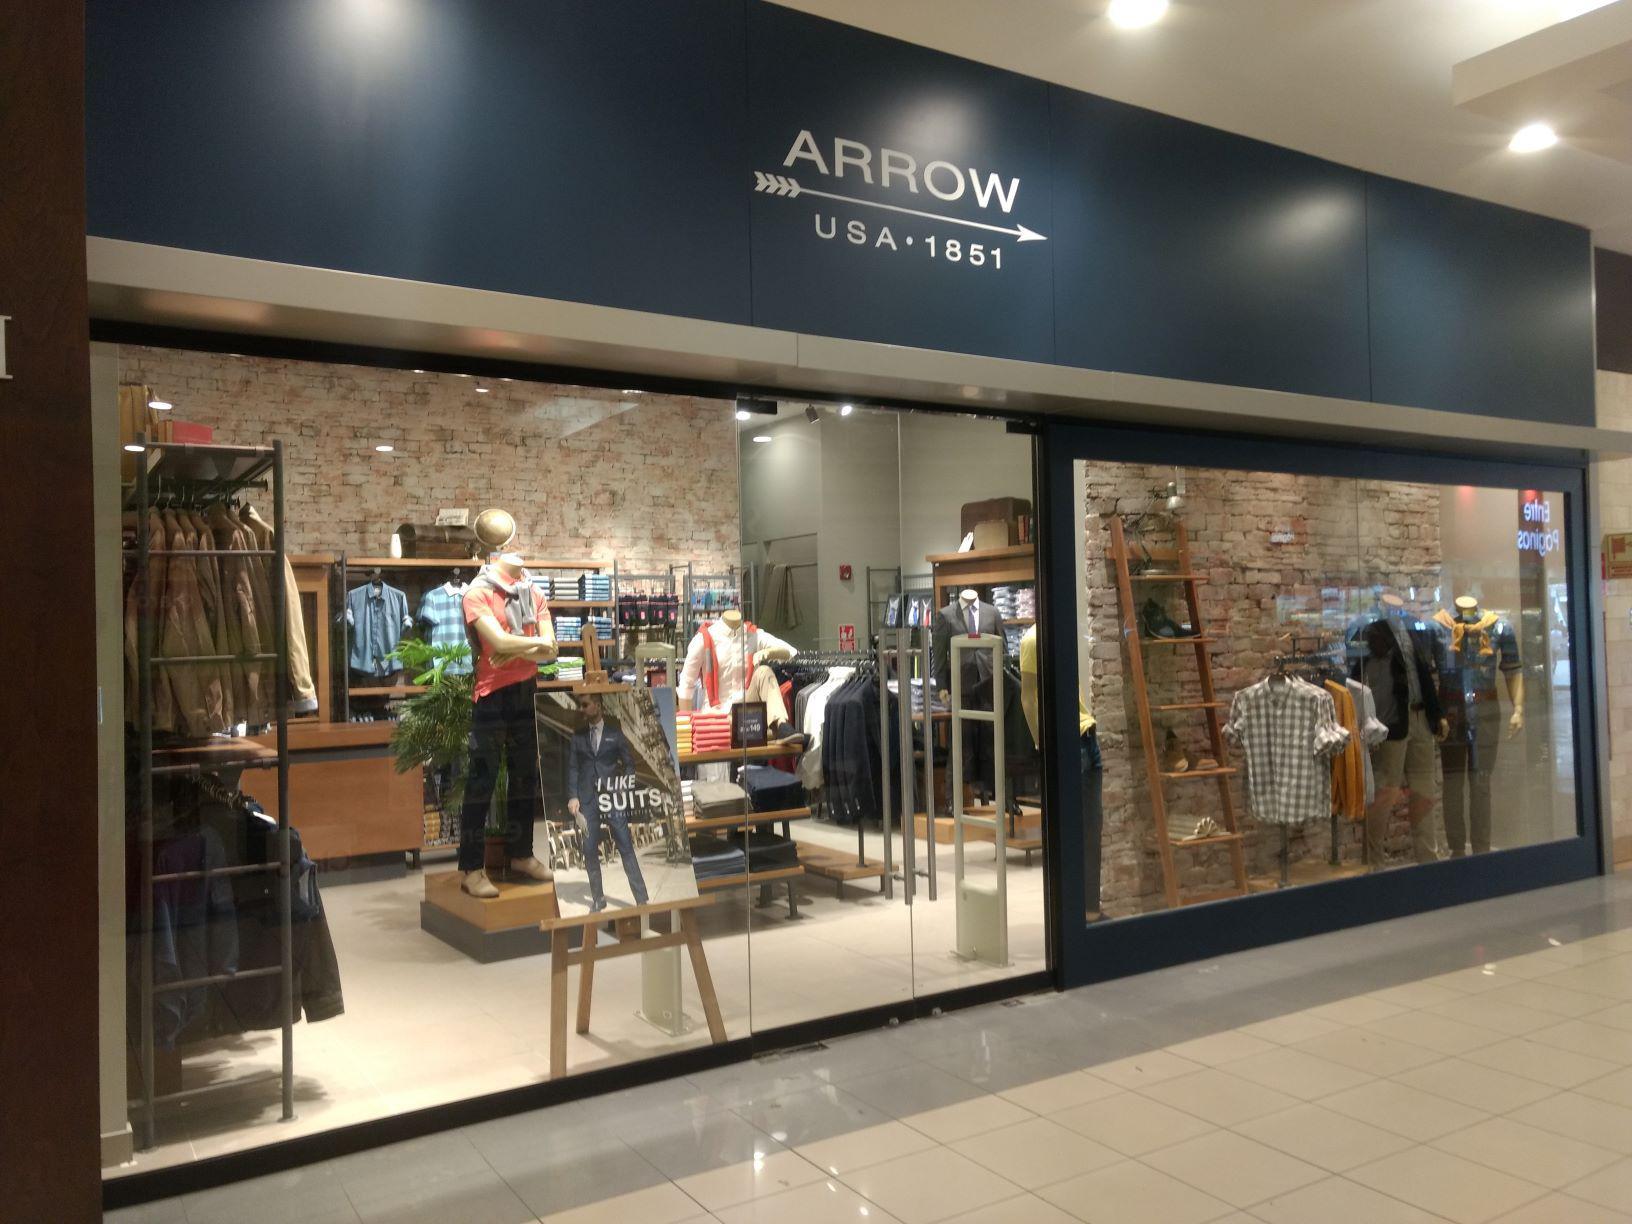 ARROW, marca estadounidense de moda masculina, abre nueva  tienda en el C.C. Plaza Norte, a fin de ampliar su cobertura y crecer en esta plaza en un 38% para el 2019. Además, reforzará su propuesta de producto “Smart casual” y renovará sus tiendas.